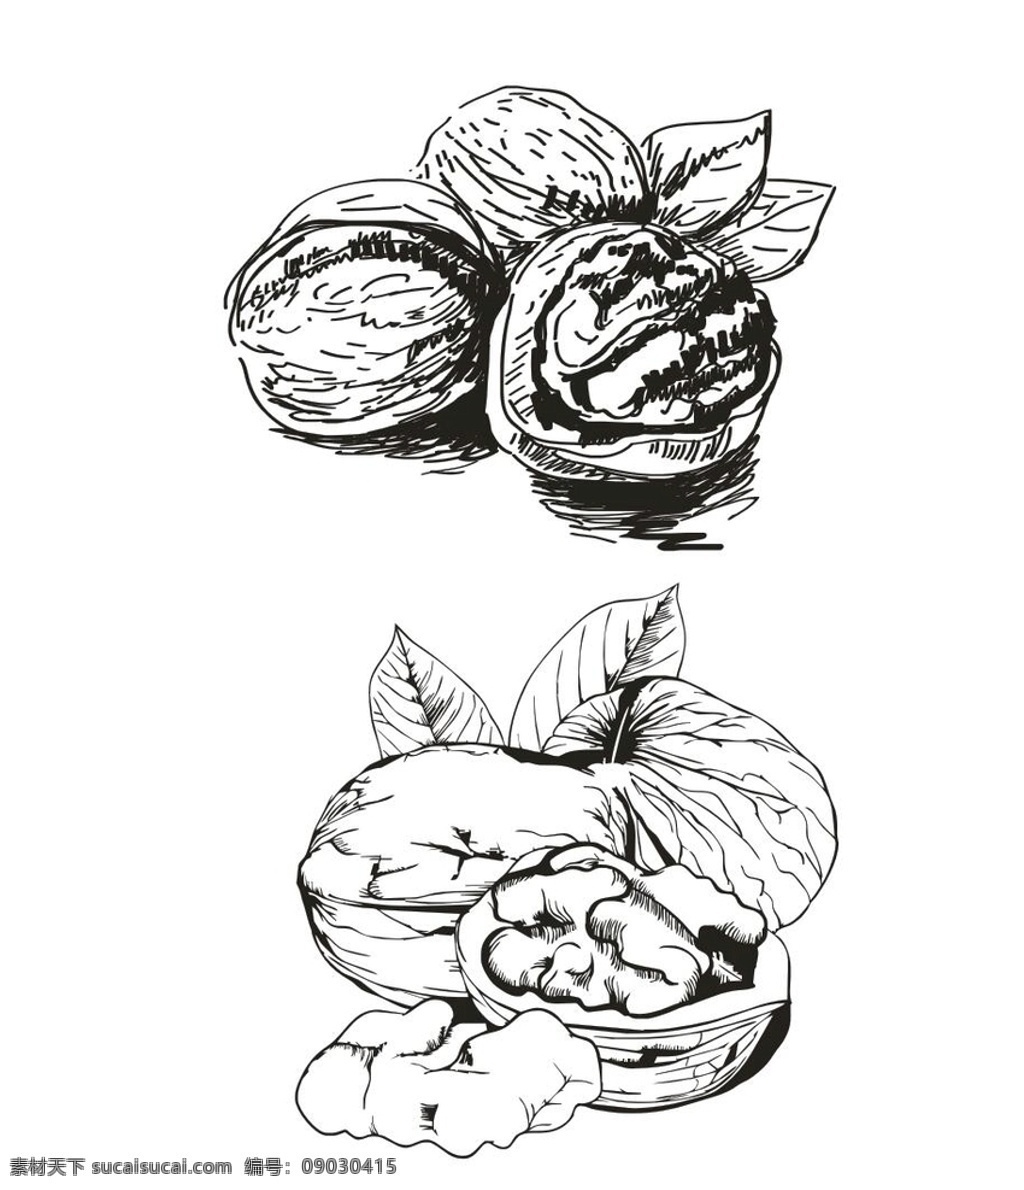 核桃 矢量 手绘 简 笔画 简笔画 黑白 线条 胡桃 核桃仁 植物 生物世界 水果